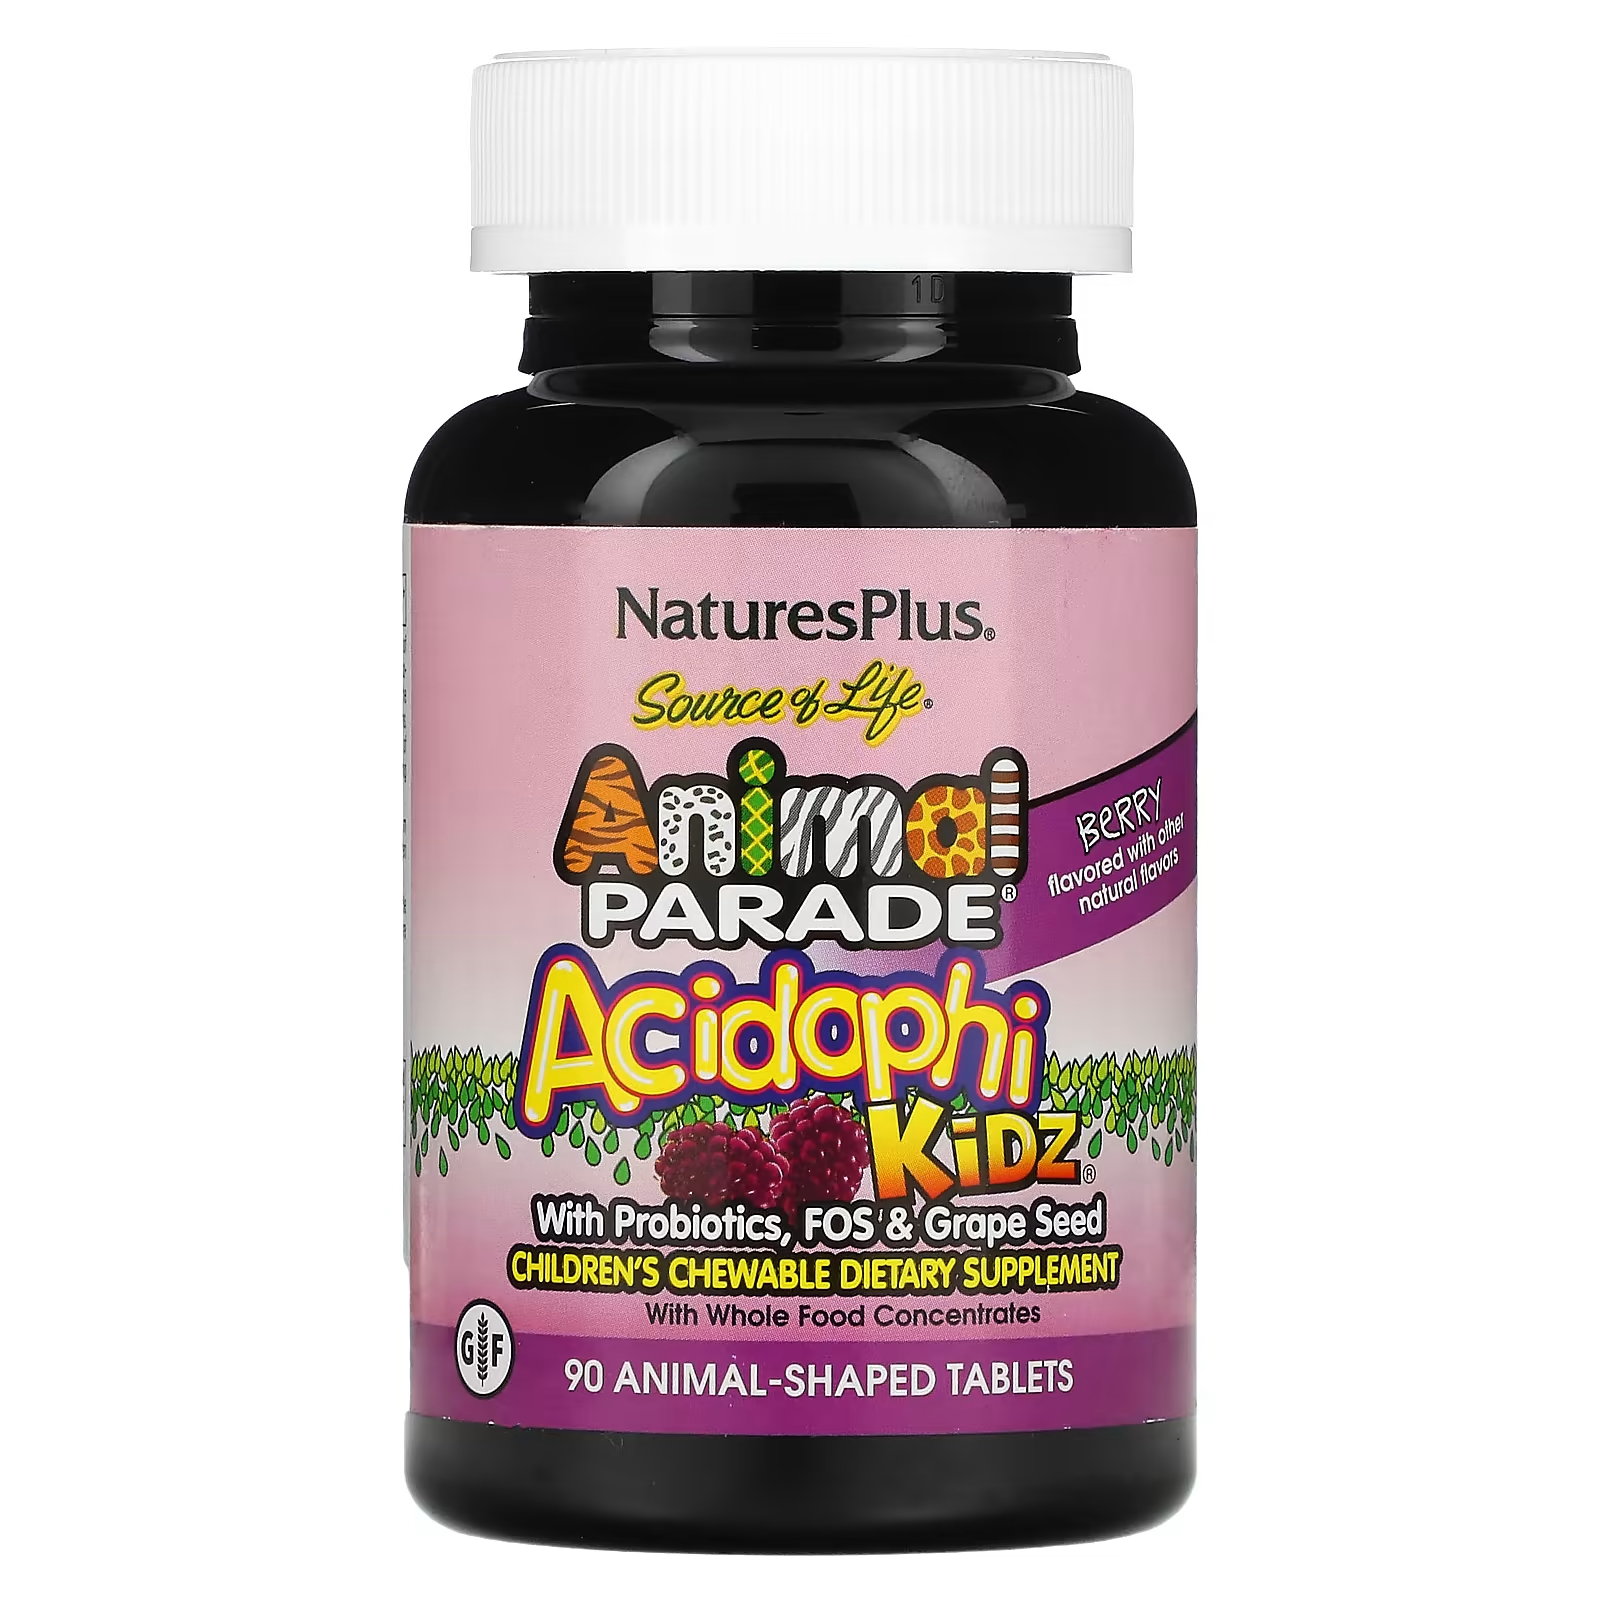 Детские жевательные витамины NaturesPlus Source of Life Animal Parade AcidophiKidz, 90 таблеток в форме животных